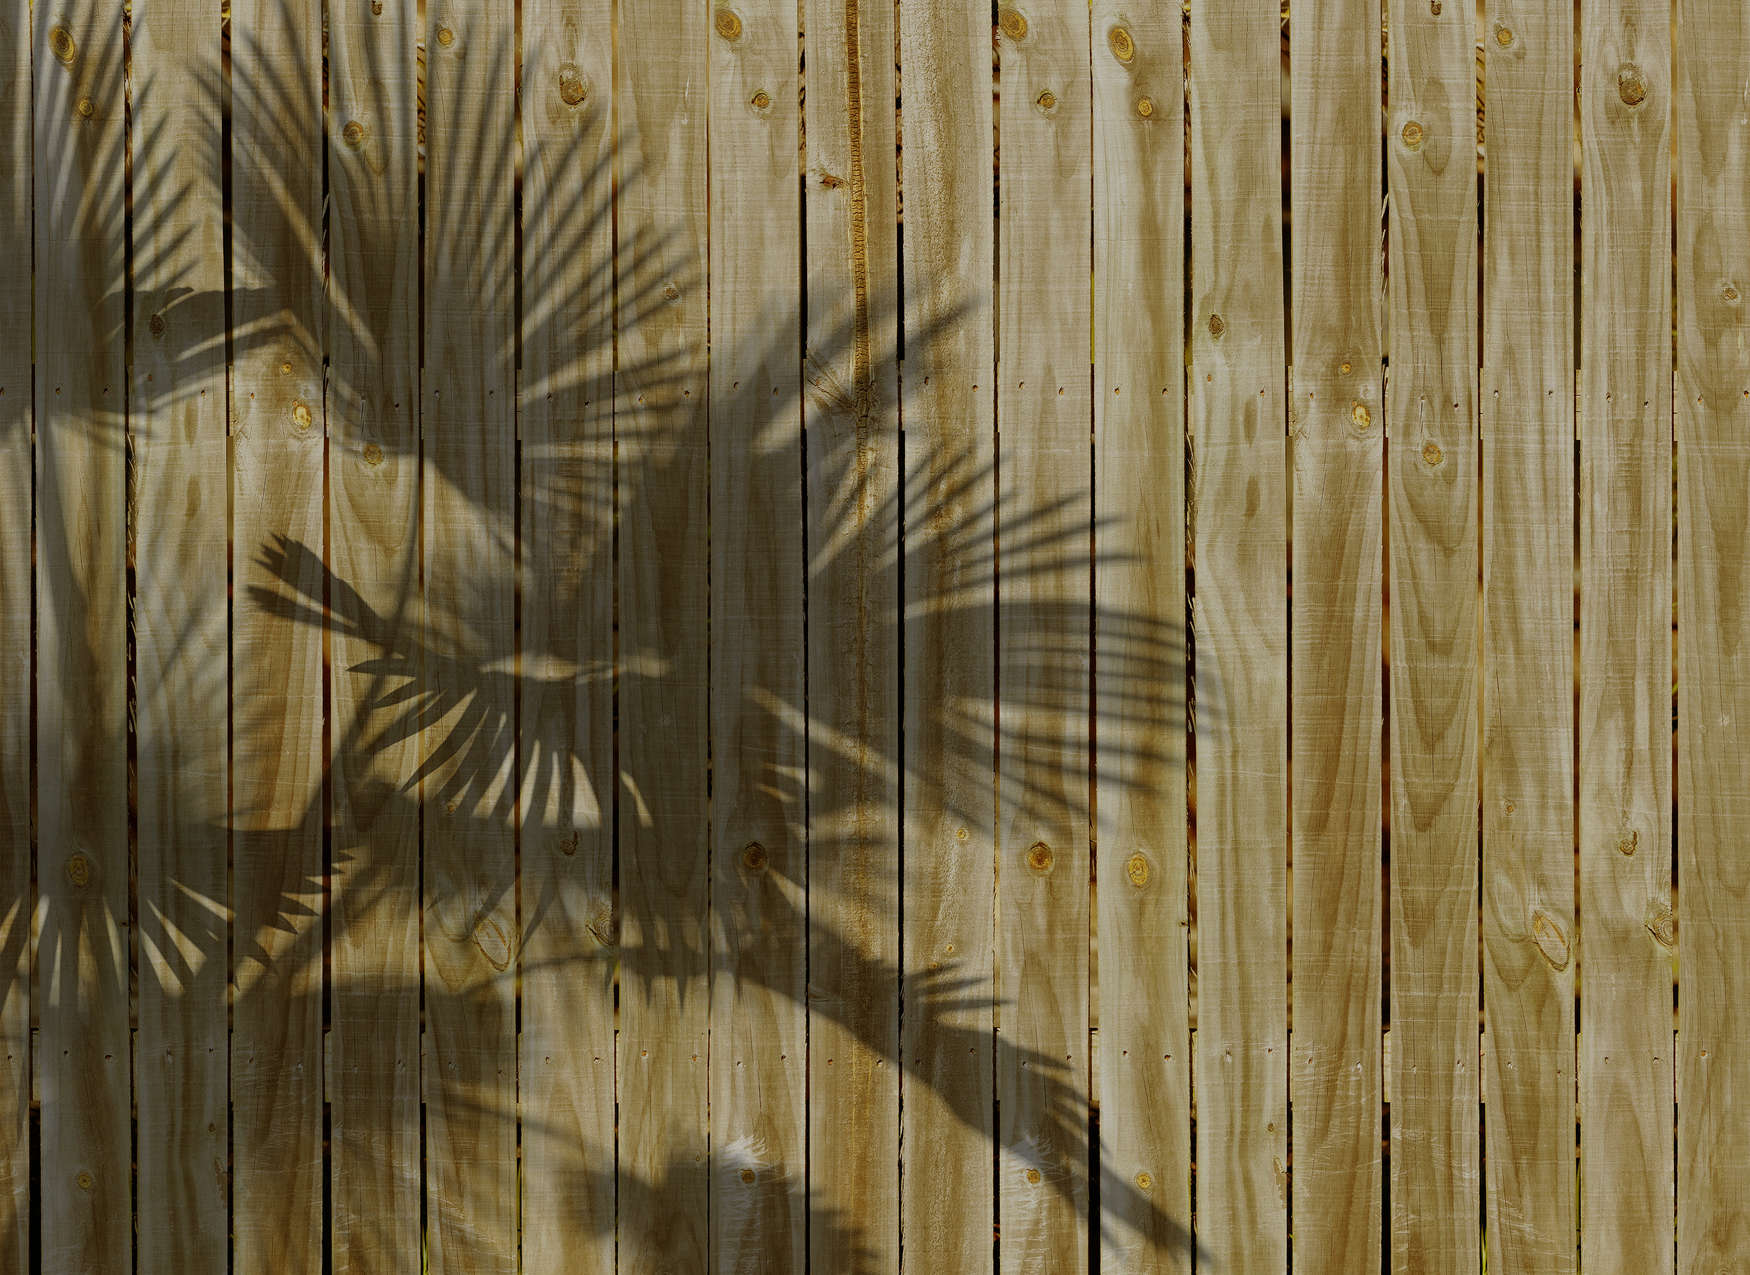             Mural de aspecto de madera con sombras de hojas de palmera - Beige
        